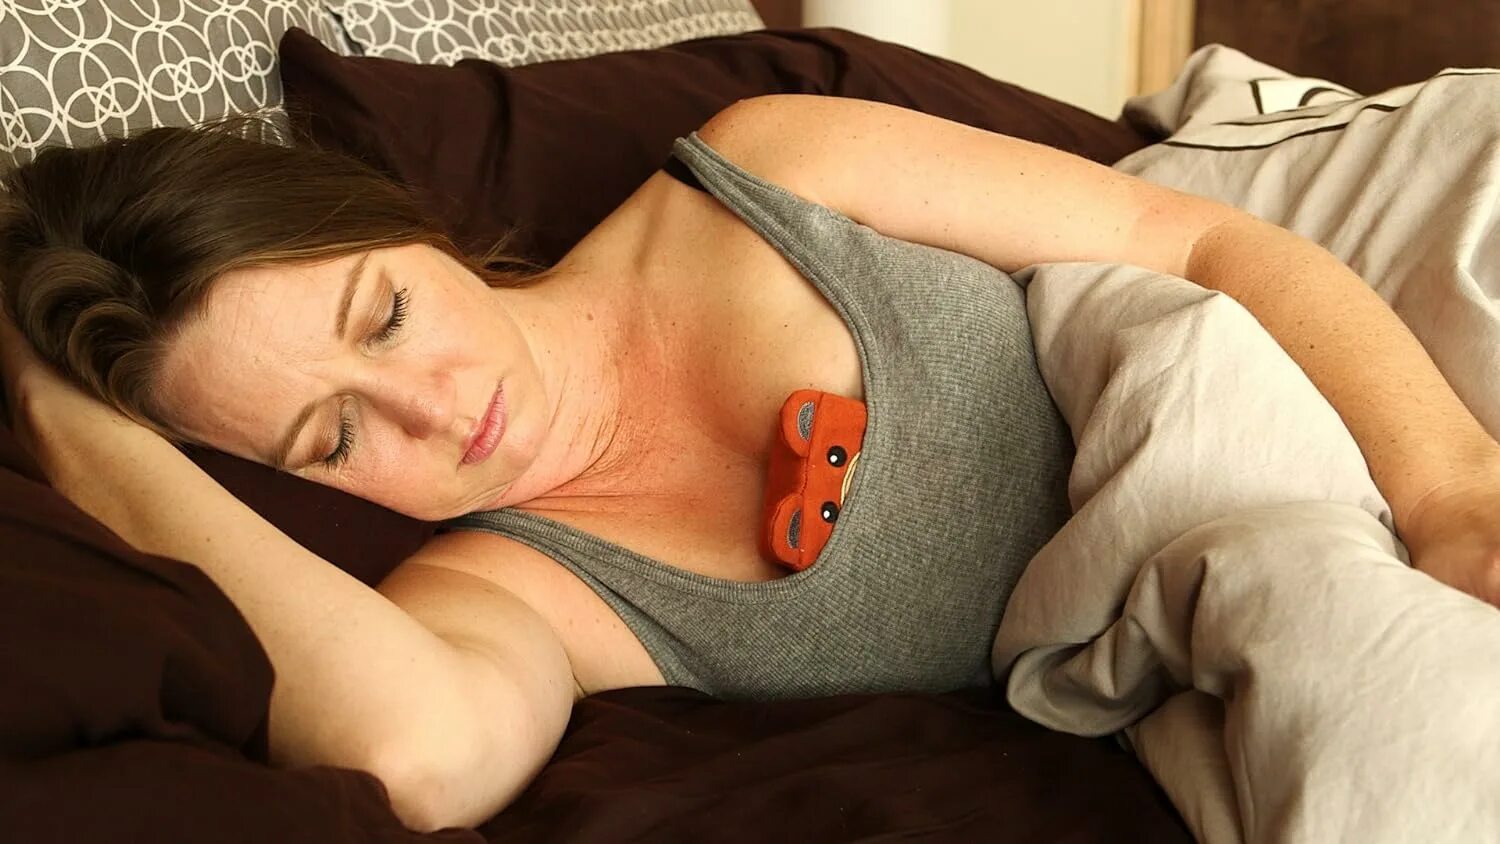 Sleeping drinking mom. Спящие взрослые женщины. Подушка для зоны декольте. Морщины на декольте после сна. Подушечка между грудей для сна.